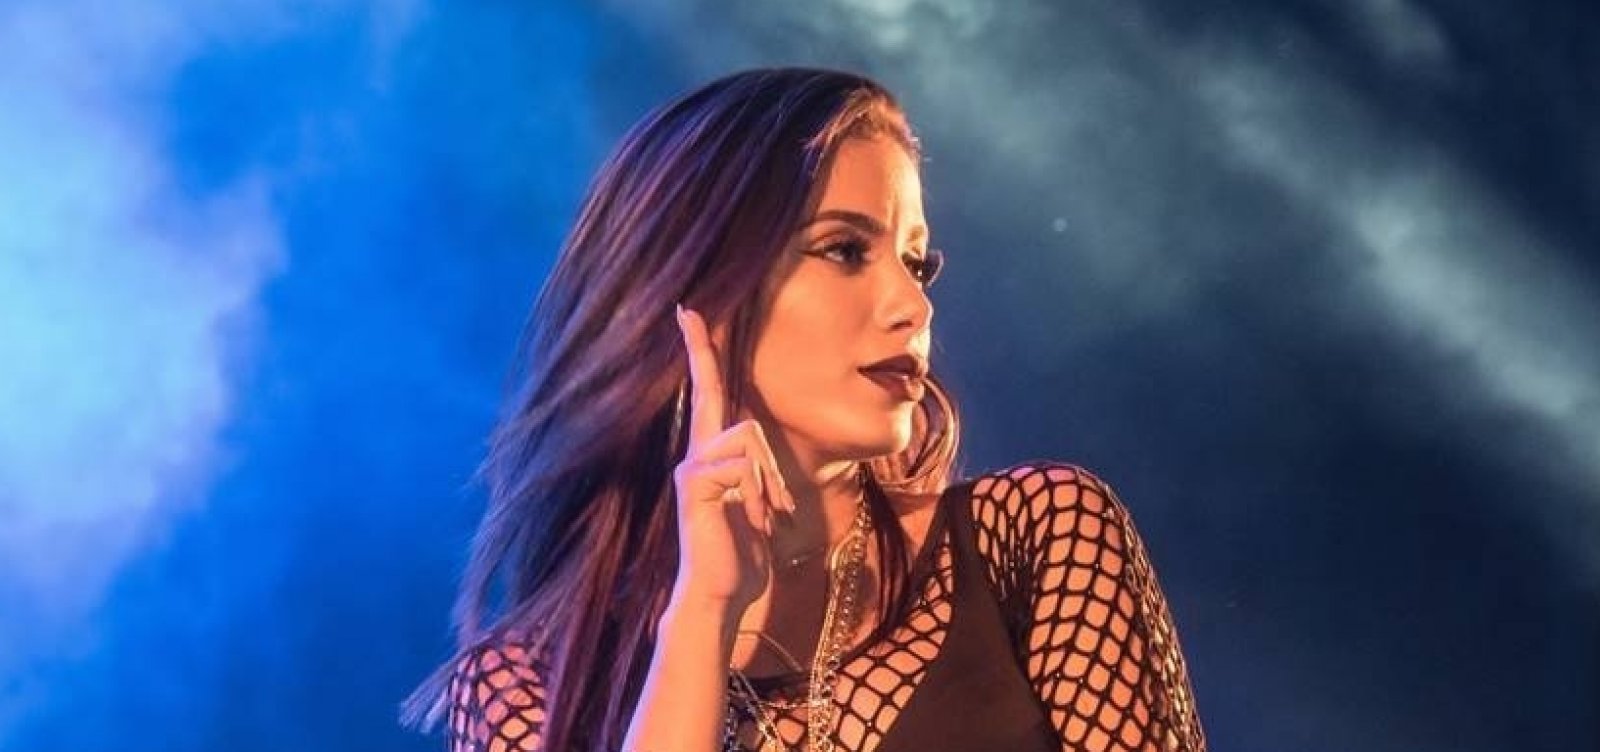 Fãs pressionam Anitta a se posicionar contra Bolsonaro; cantora rebate